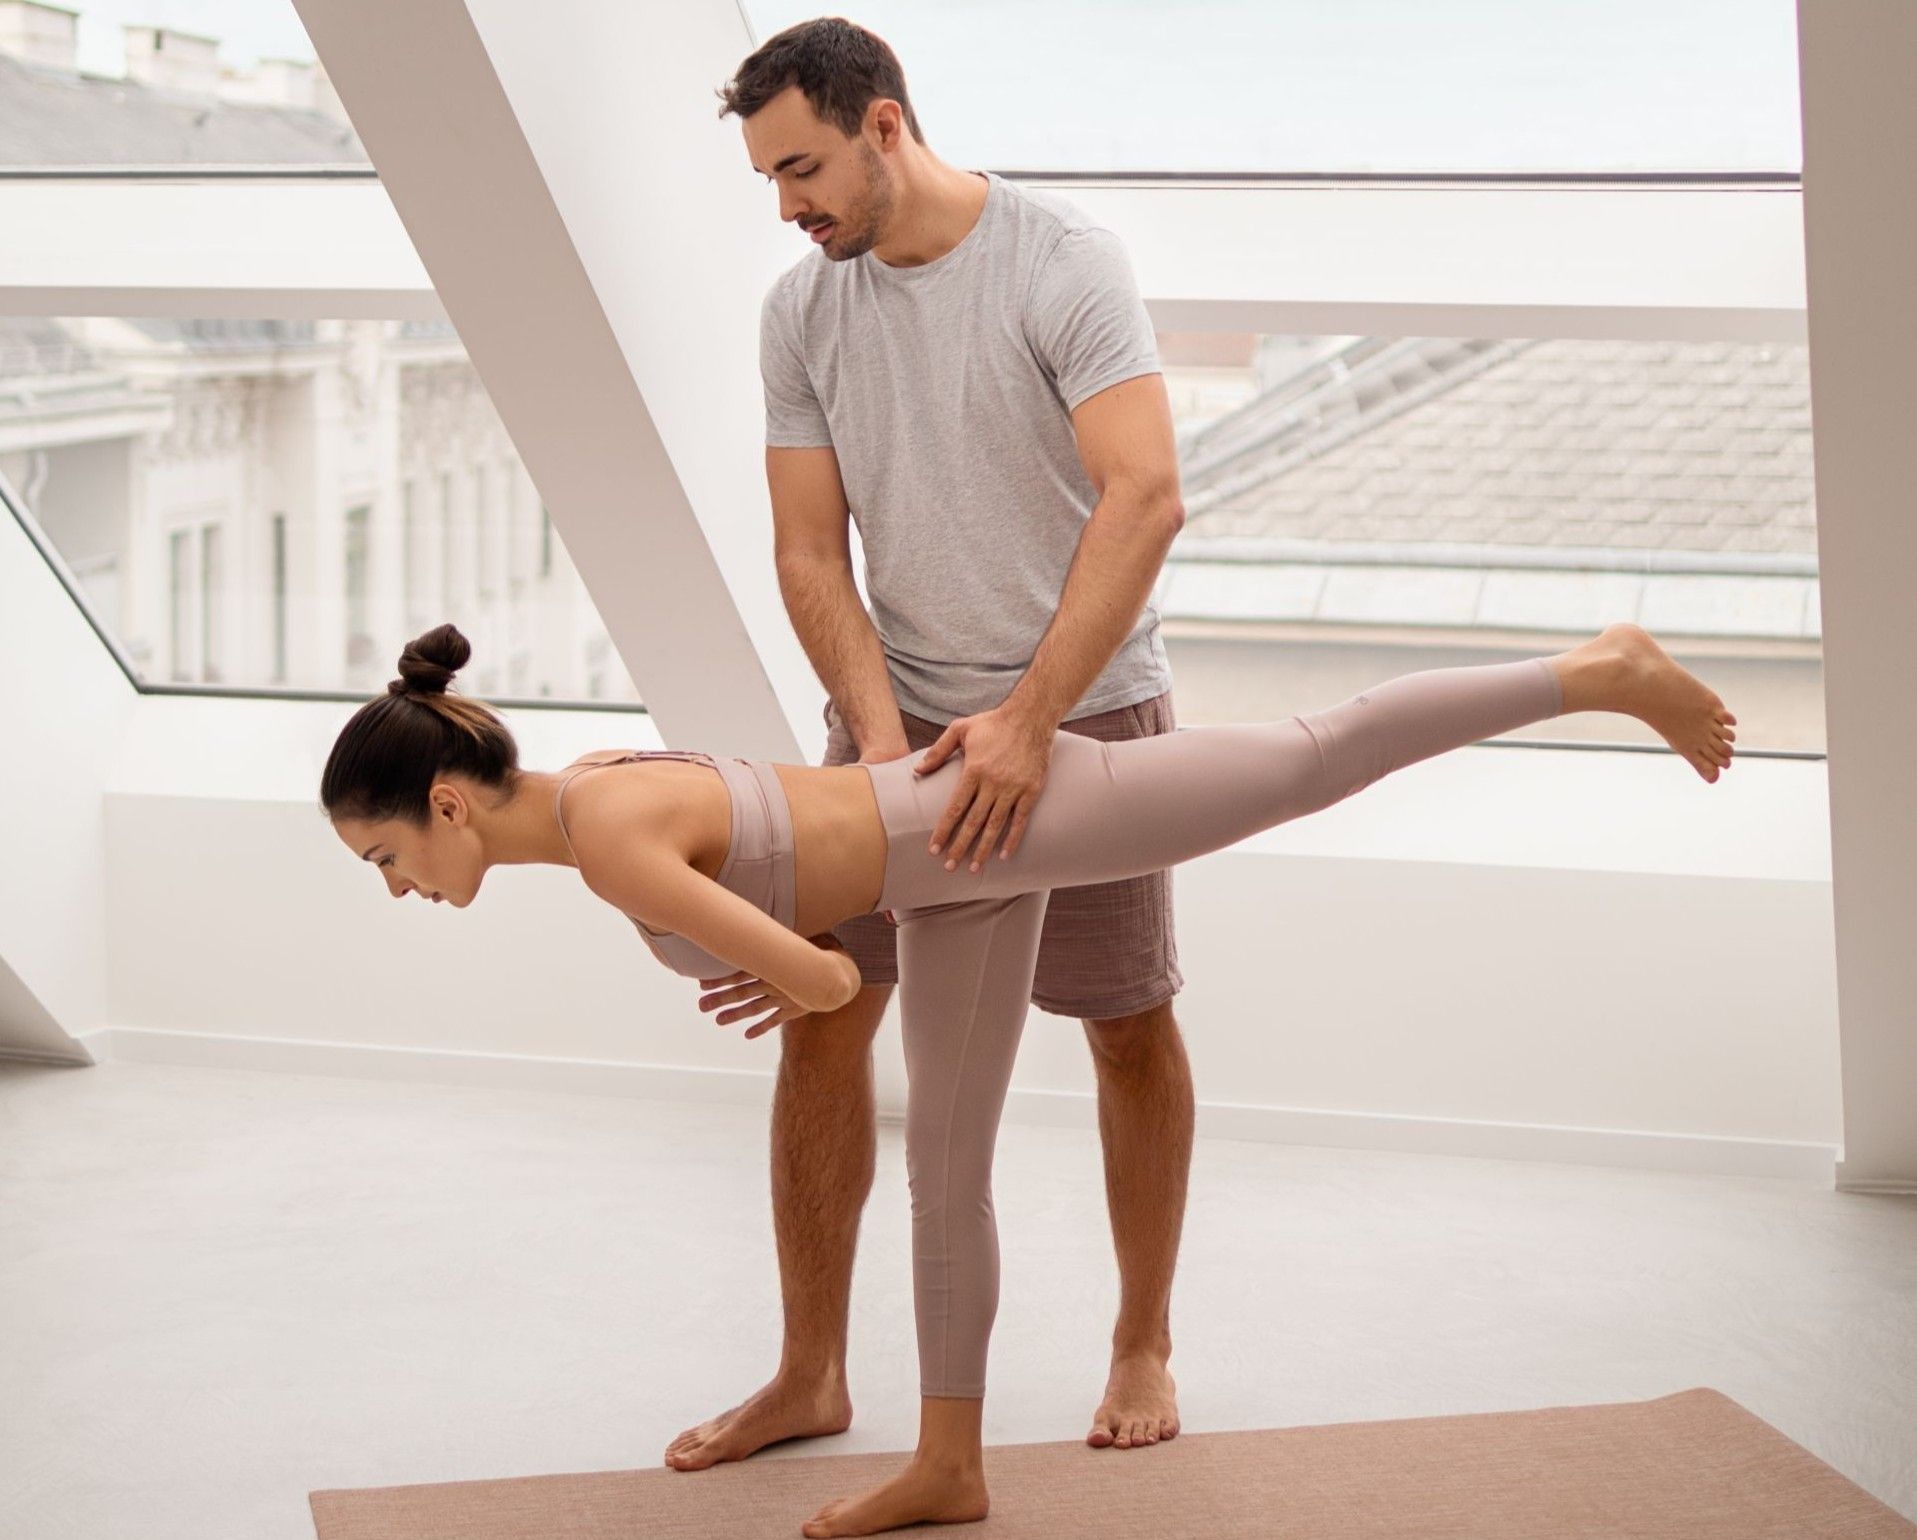 Is Online Yoga Teacher Training Worth It? Yes! For Flexibility &  Affordability